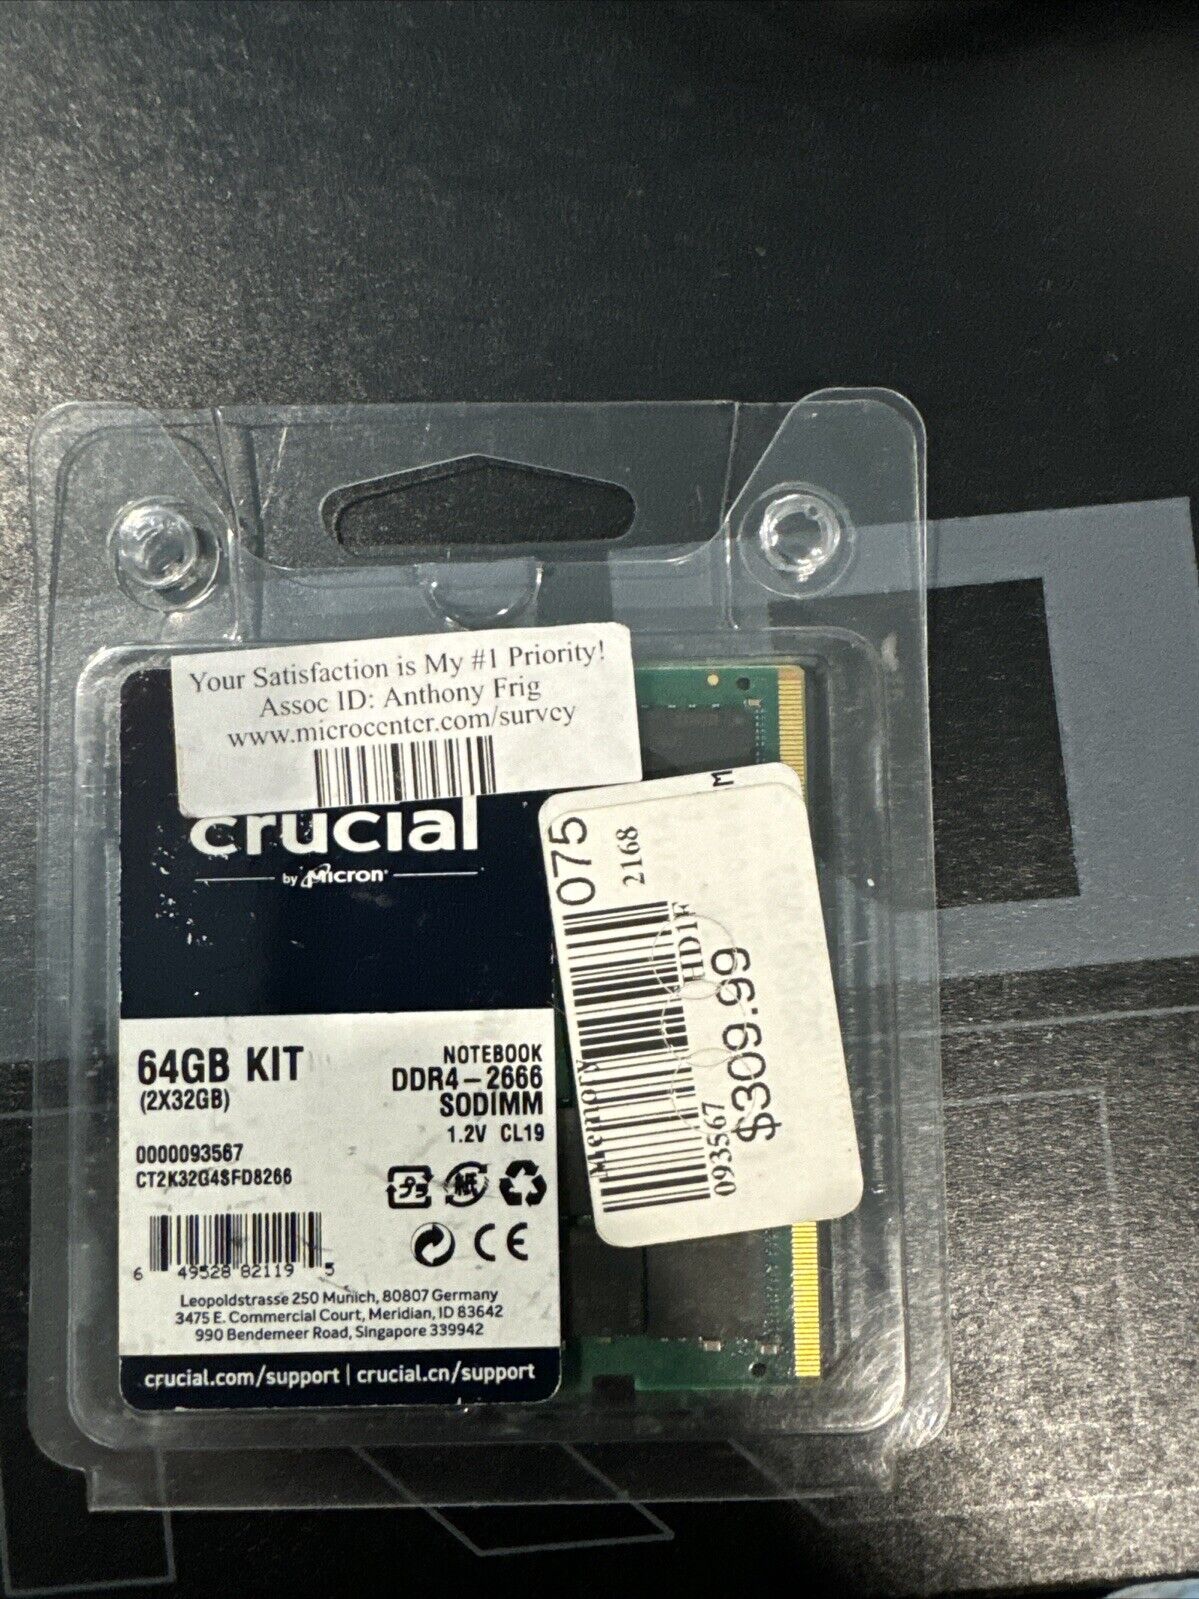 Crucial 64GB Kit (32GBx2) DDR4-2666 SODIMM for Mac